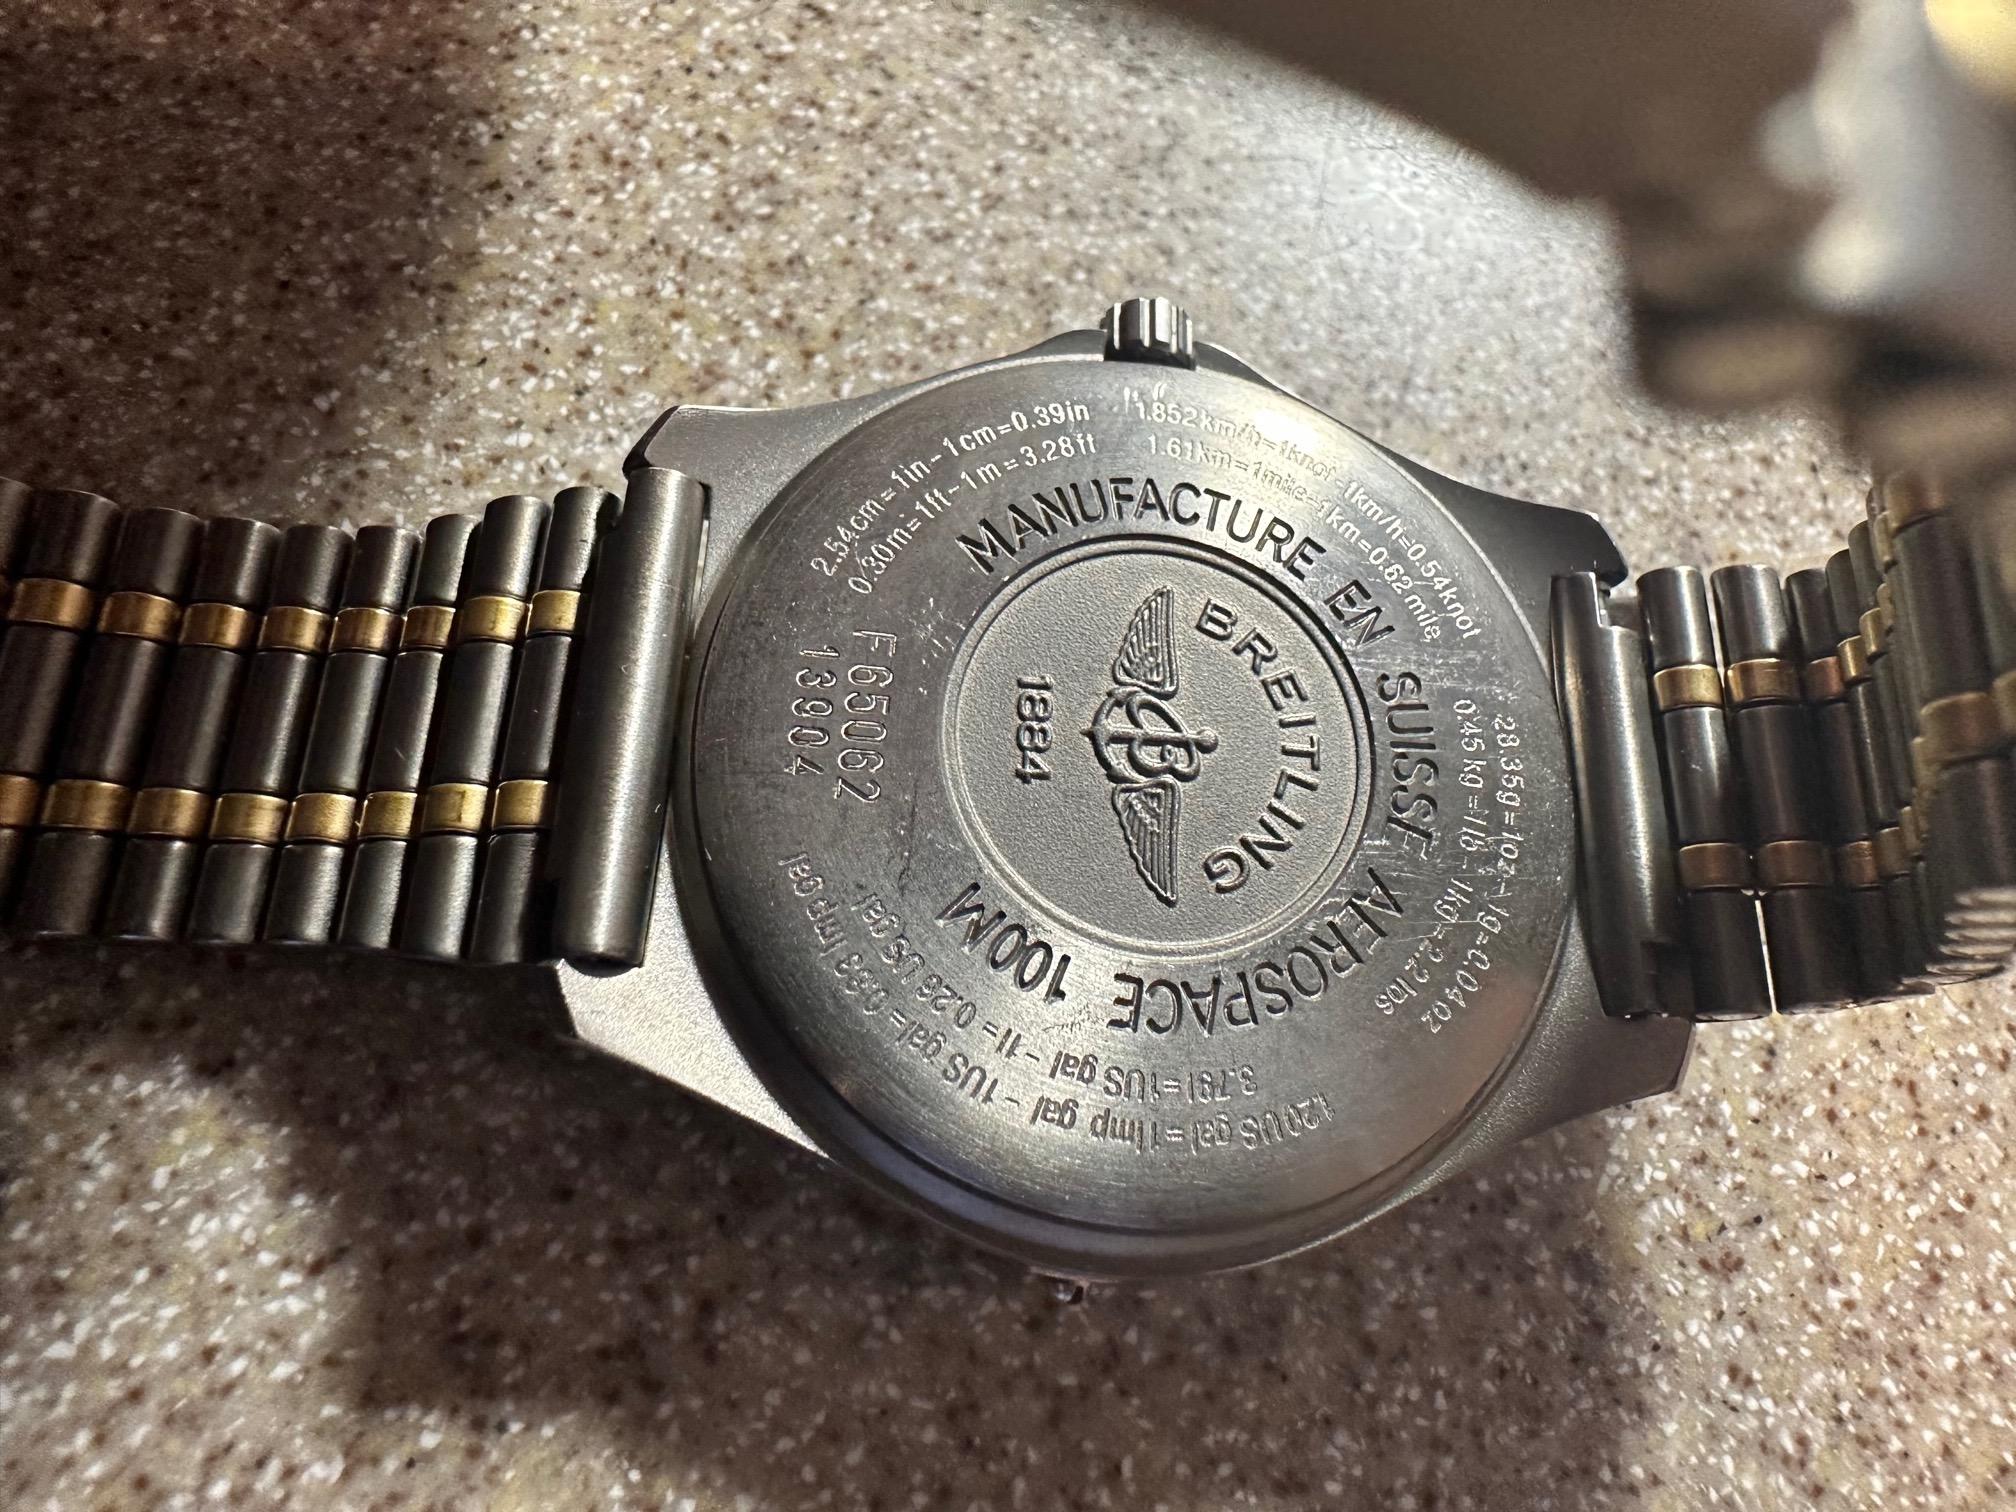 Breitling Aerospace 100m Titanium Case & Bracelet W/ Black Dial Chronograph  For Sale 4